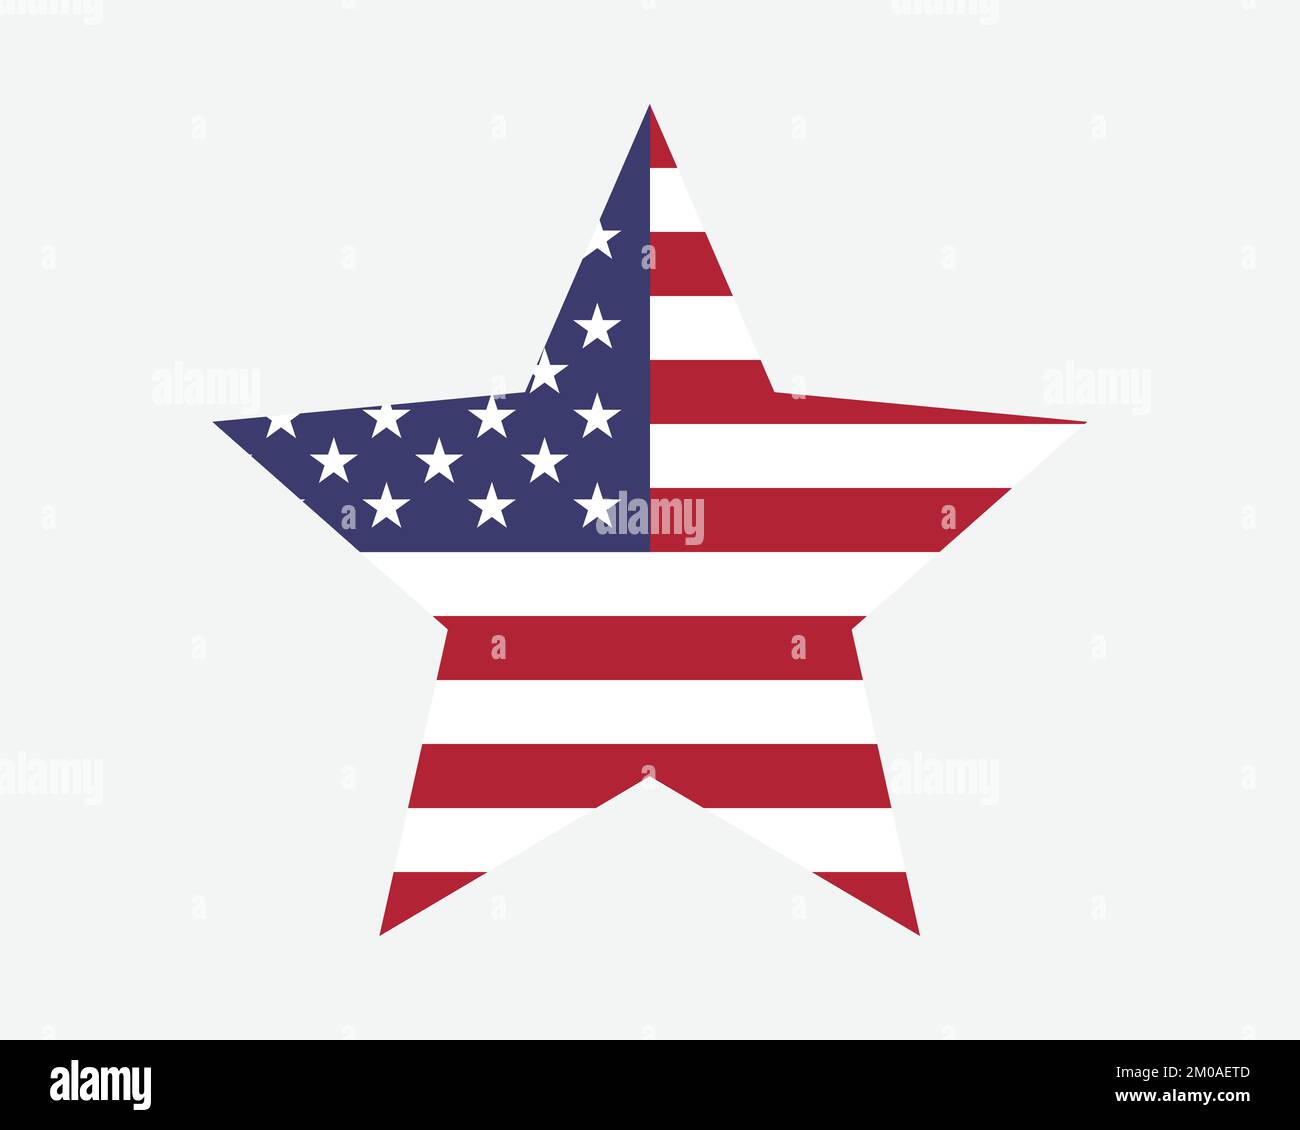 Drapeau étoile américain. US États-Unis d'Amérique Star Shape Flag. American Star Spangled Banner Old Glory Country icône nationale symbole Illustration vectorielle Illustration de Vecteur